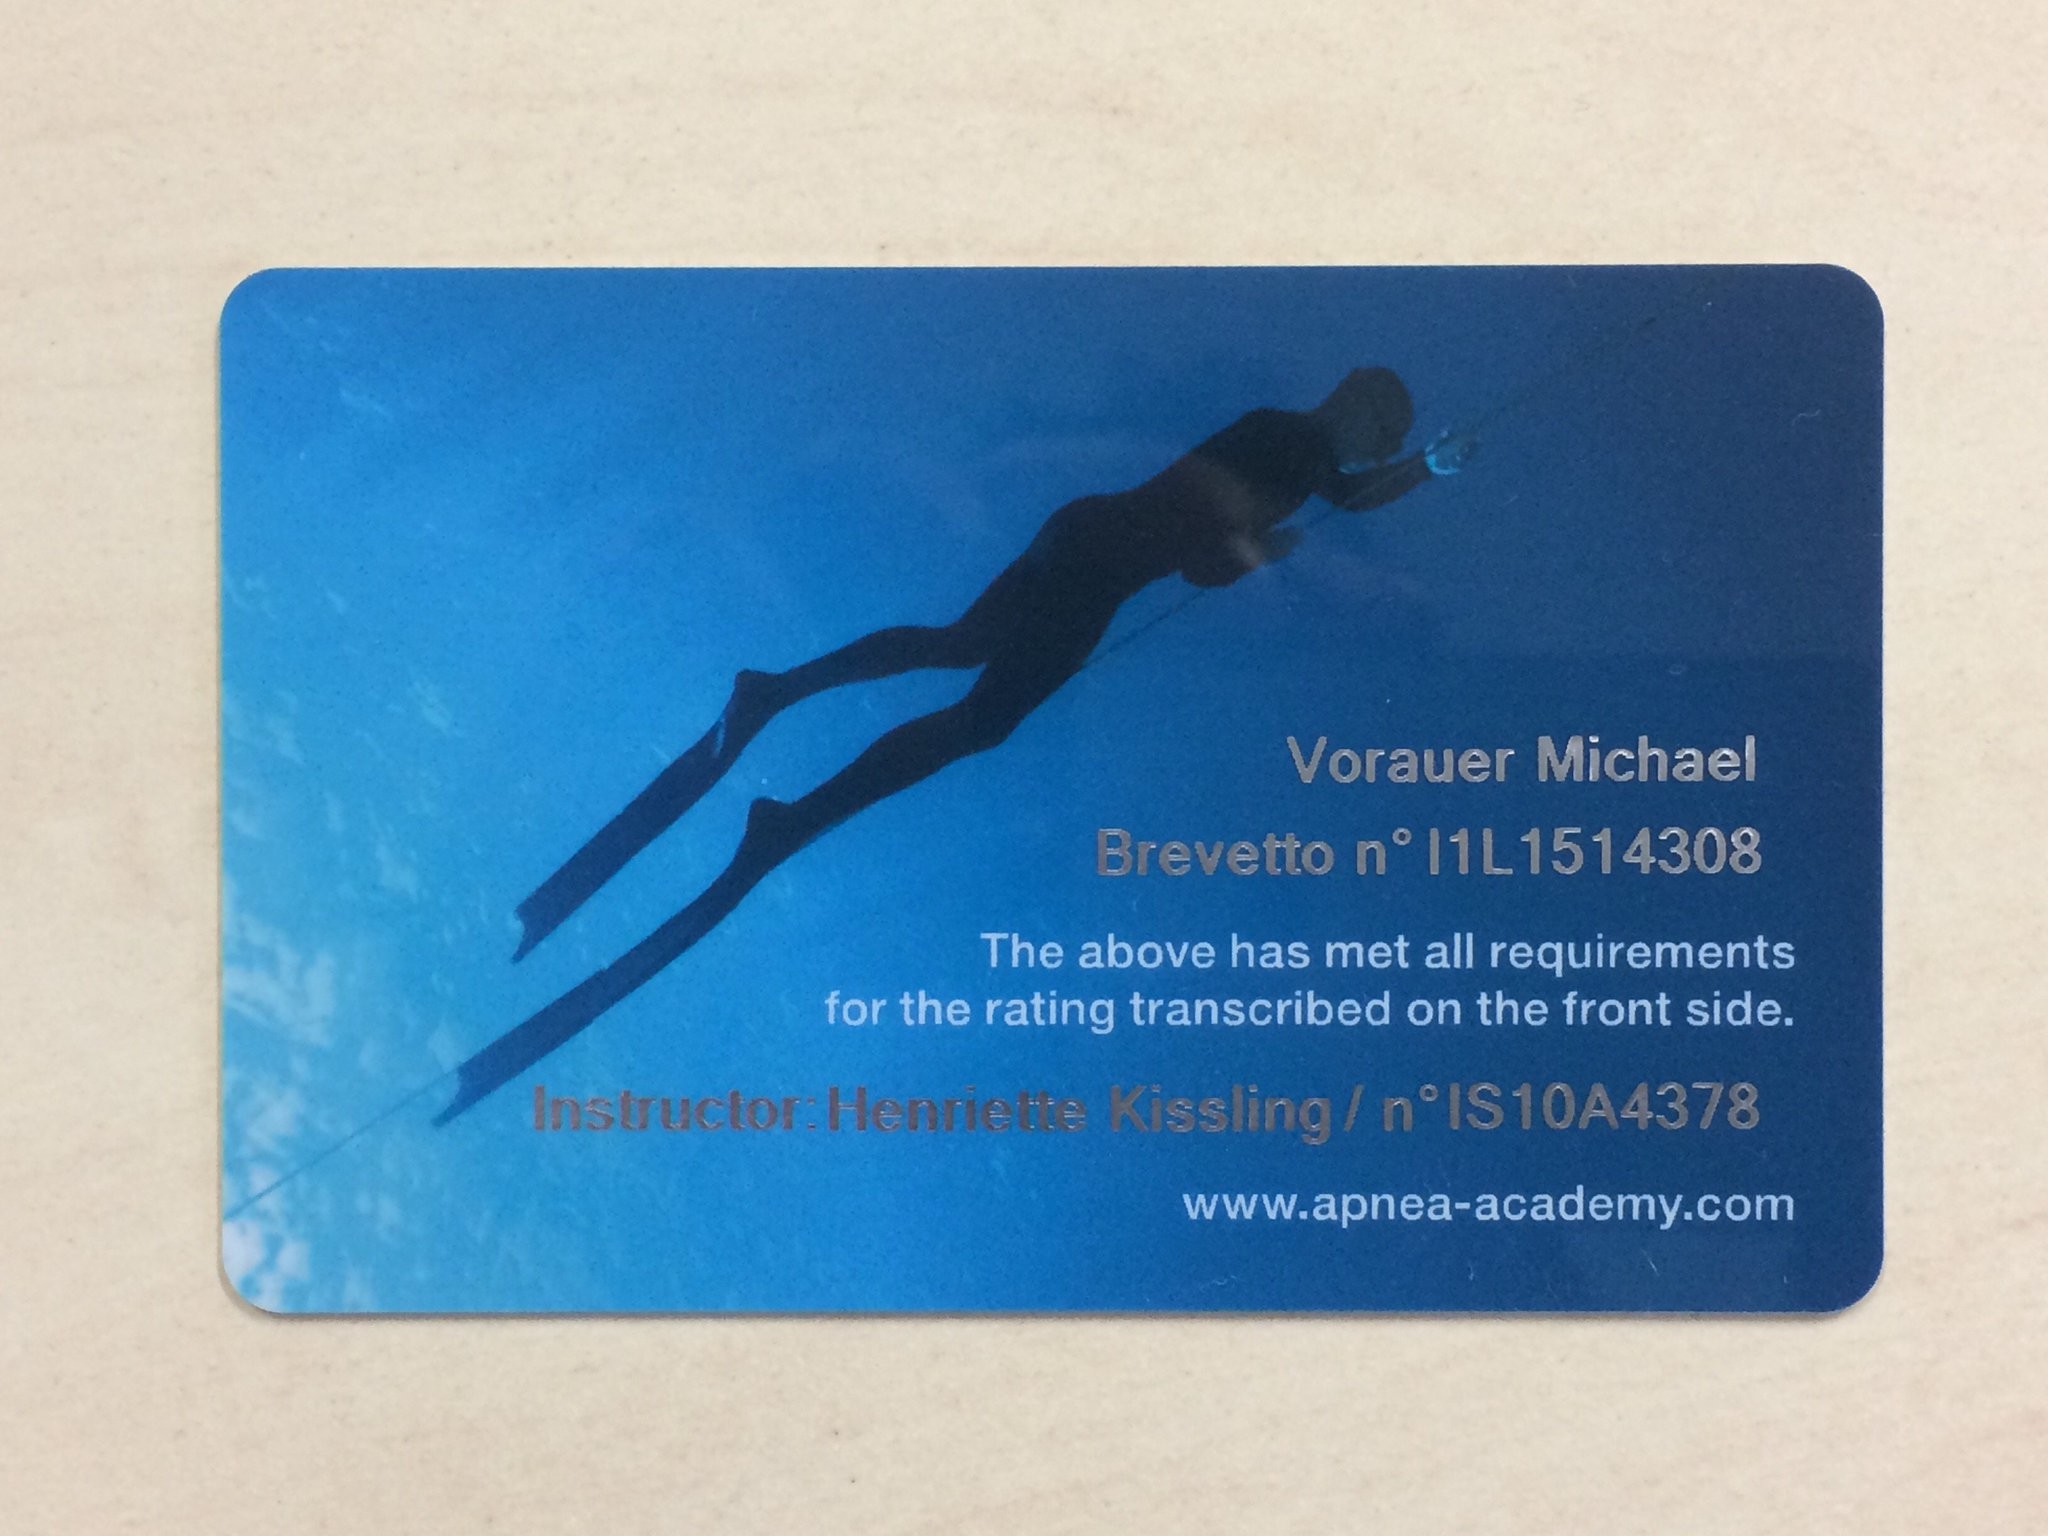 2048x1536 Michael Vorauer on Twitter: "Da isses, das #Brevet! GroÃe Freude.  #Freitauchen #freediving #apnea #apnoe @ApneaAcademy  https://t.co/tokEeQ0IAh"